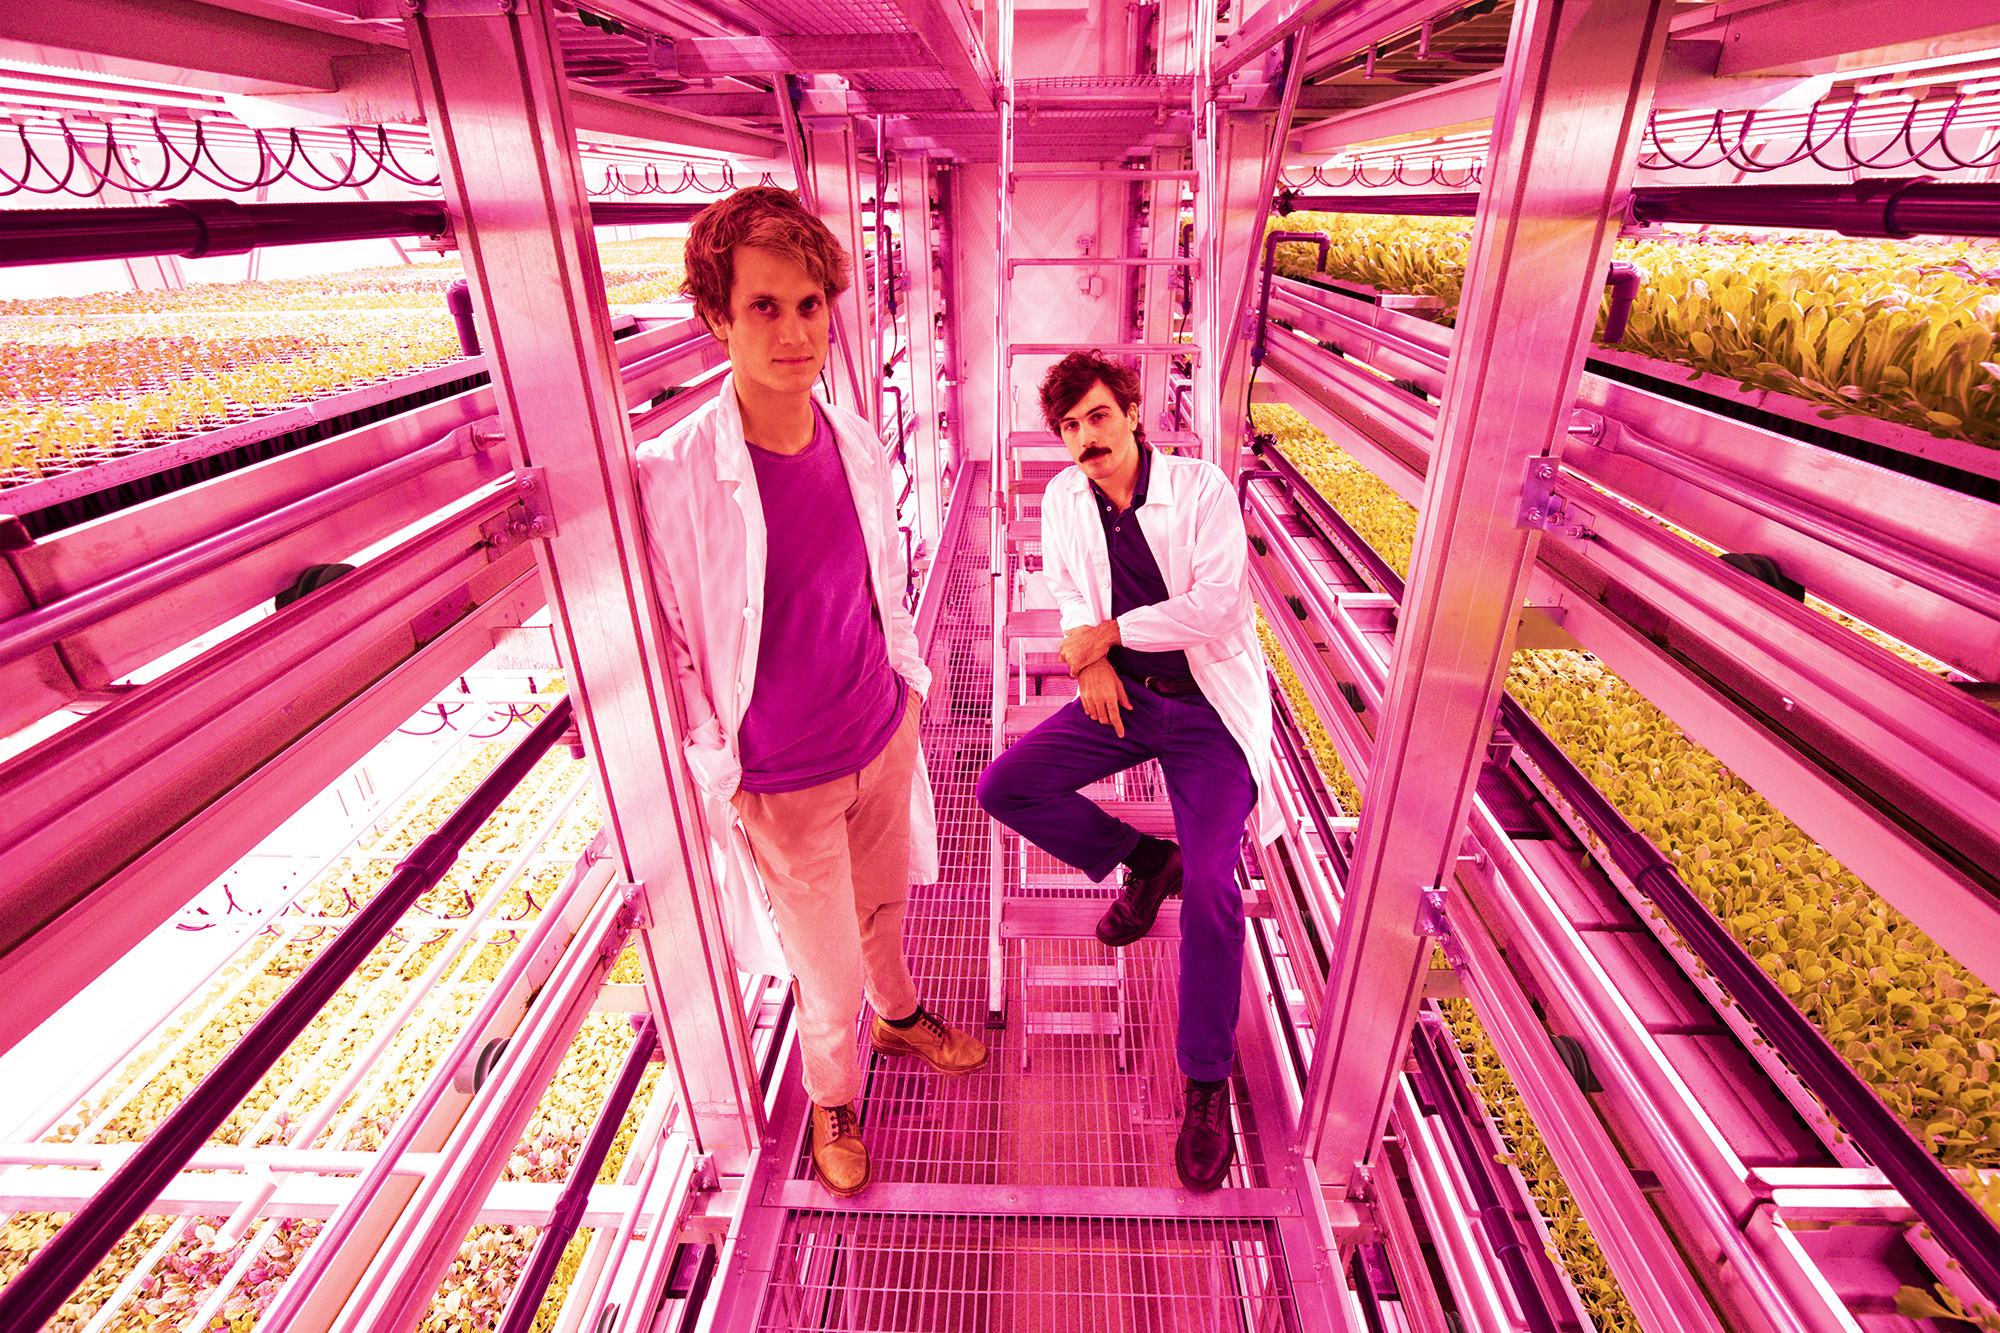 Vertical farm, i due fondatori della vertical farm Agricola Moderna dentro la struttura